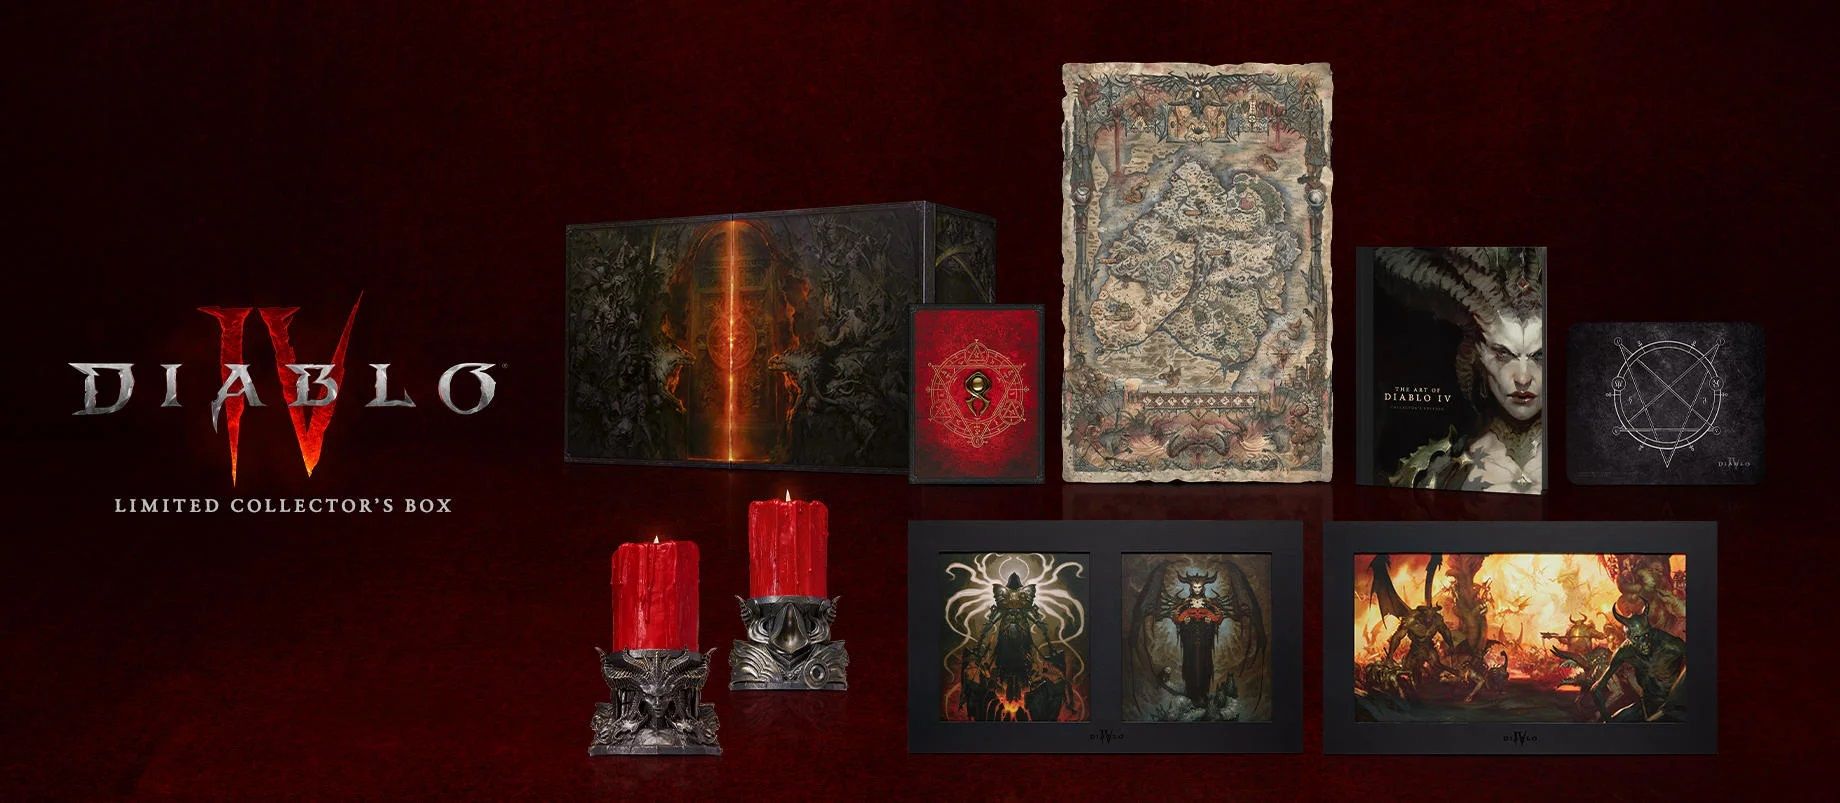 Diablo IV Limited Collector’s Box giá 100 đô chứa toàn những thứ xịn sò, nhưng tuyệt nhiên không có… đĩa game